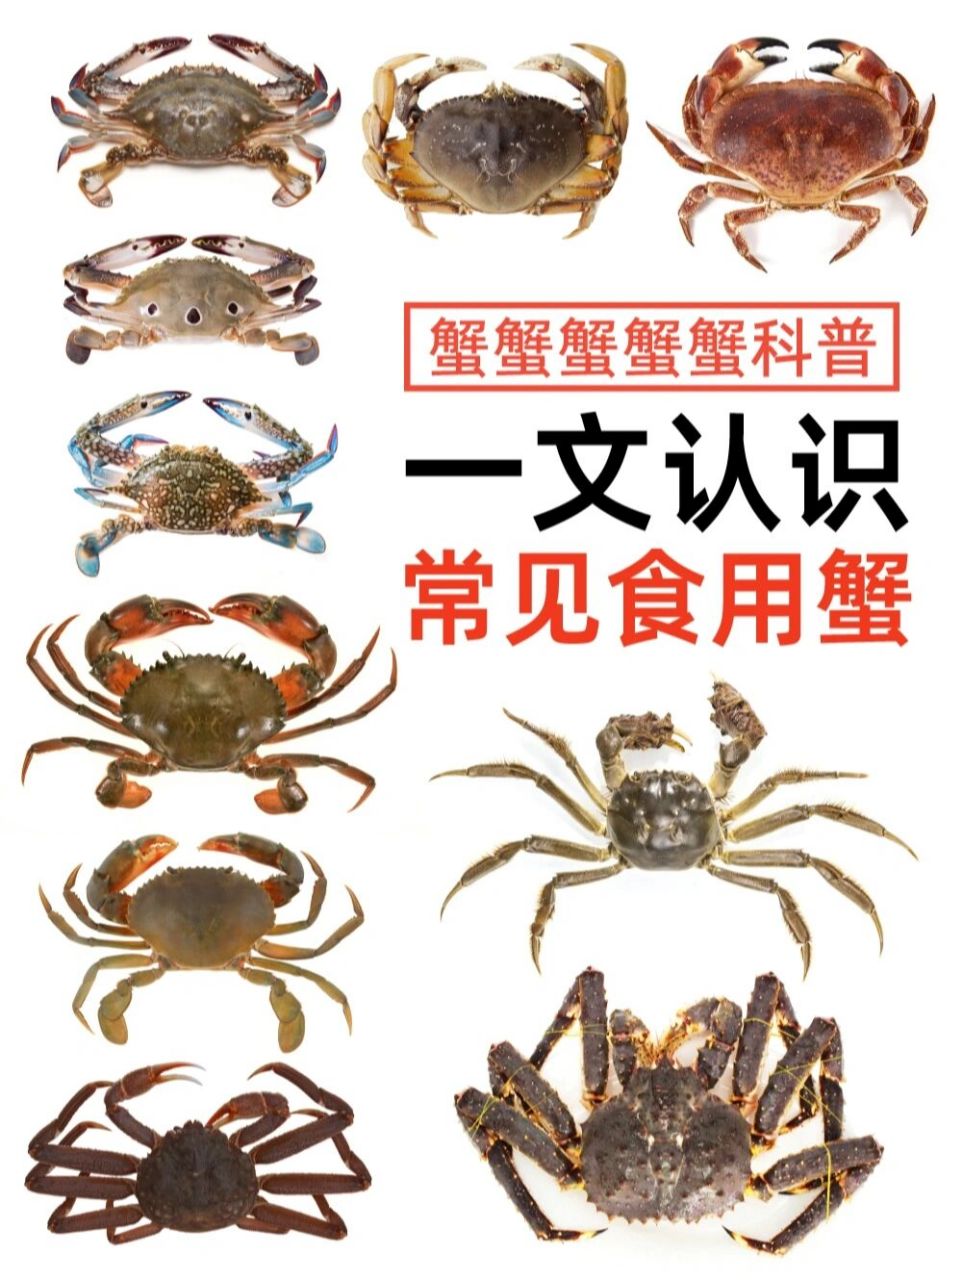 螃蟹品种大全图 图解图片